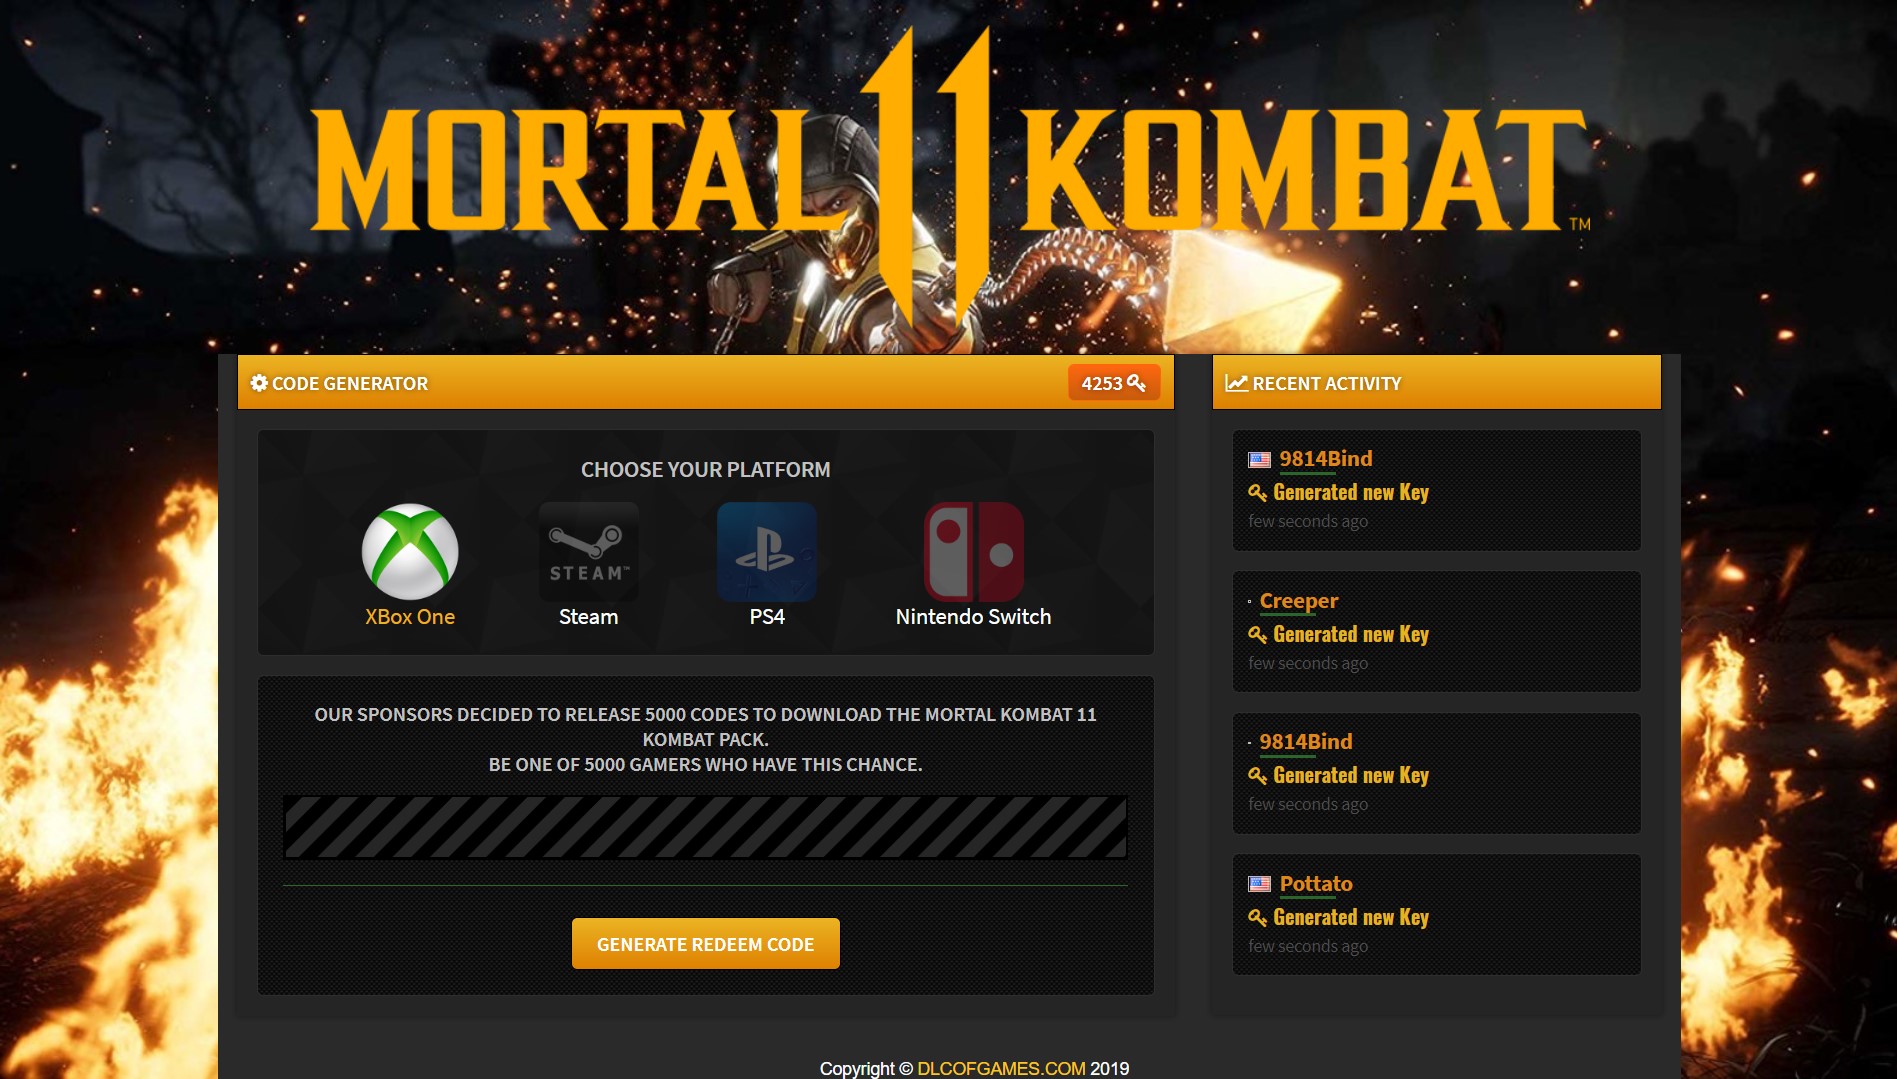 Mortal kombat dlc download free code 39 barcode